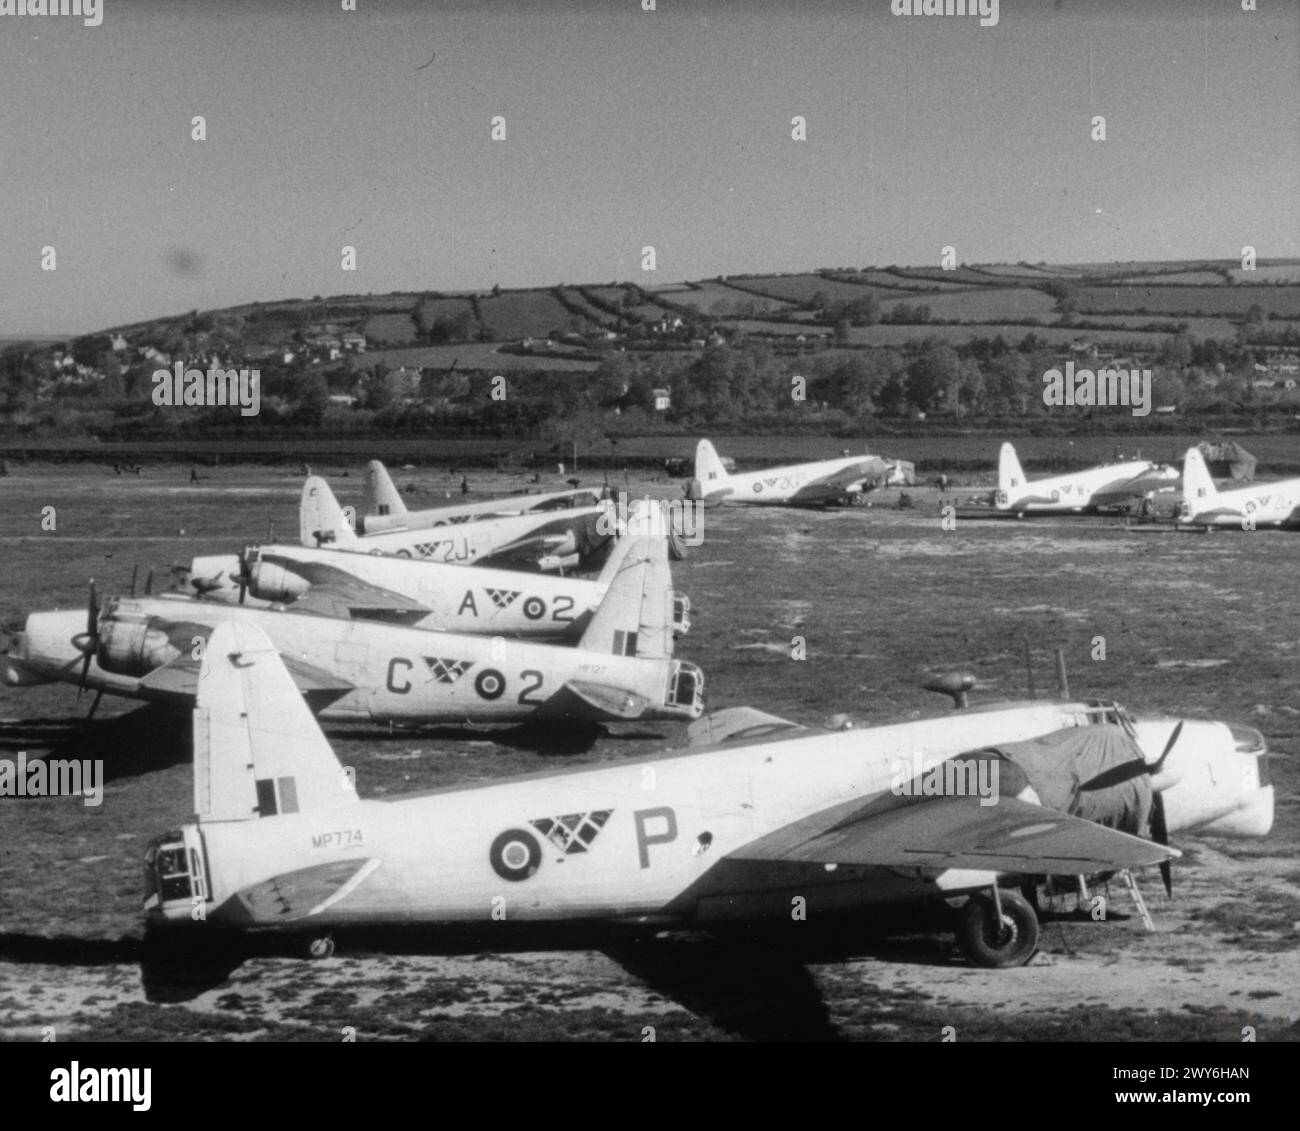 COMANDO COSTIERO DELLA ROYAL AIR FORCE, 1939-1945. - Vickers Wellington Gr Mark XIV a Chivenor, Devon. In primo piano c'è l'MP774 "P" del No. 179 Squadron RAF, mentre gli altri aerei (incluso l'HF127 "2-C") appartengono al No. 407 Squadron RCAF. , Royal Air Force, Royal Air Force Regiment, Sqdn, 179, Royal Canadian Air Force, Elementary Flying Training School, 34, Assiniboia, Canada Foto Stock